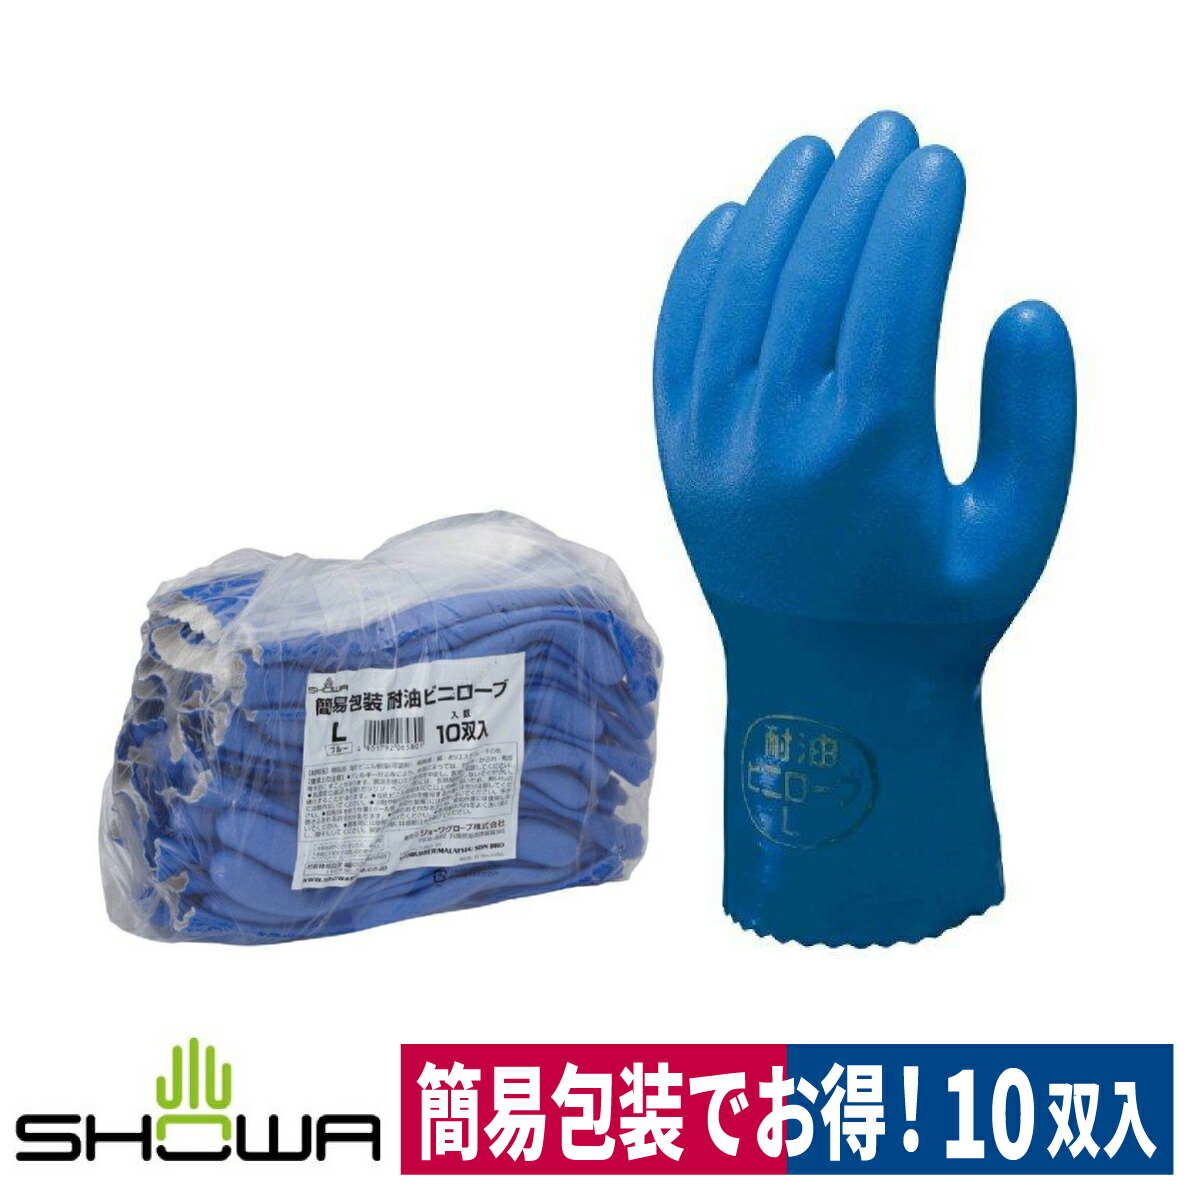 トワロン 黒潮 211 ゴム作業用手袋 東和コーポレーション 天然ゴム製